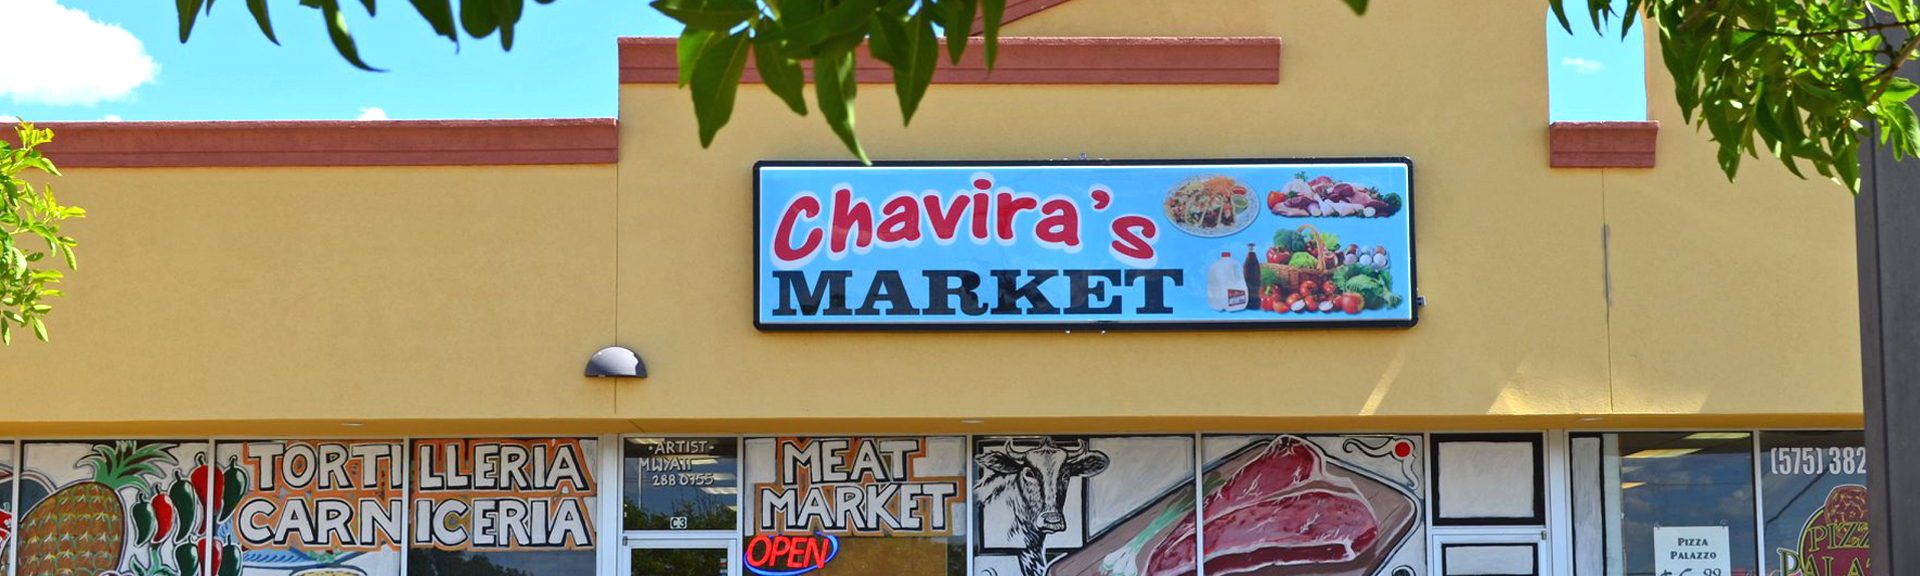 chaviras-banner-exterior